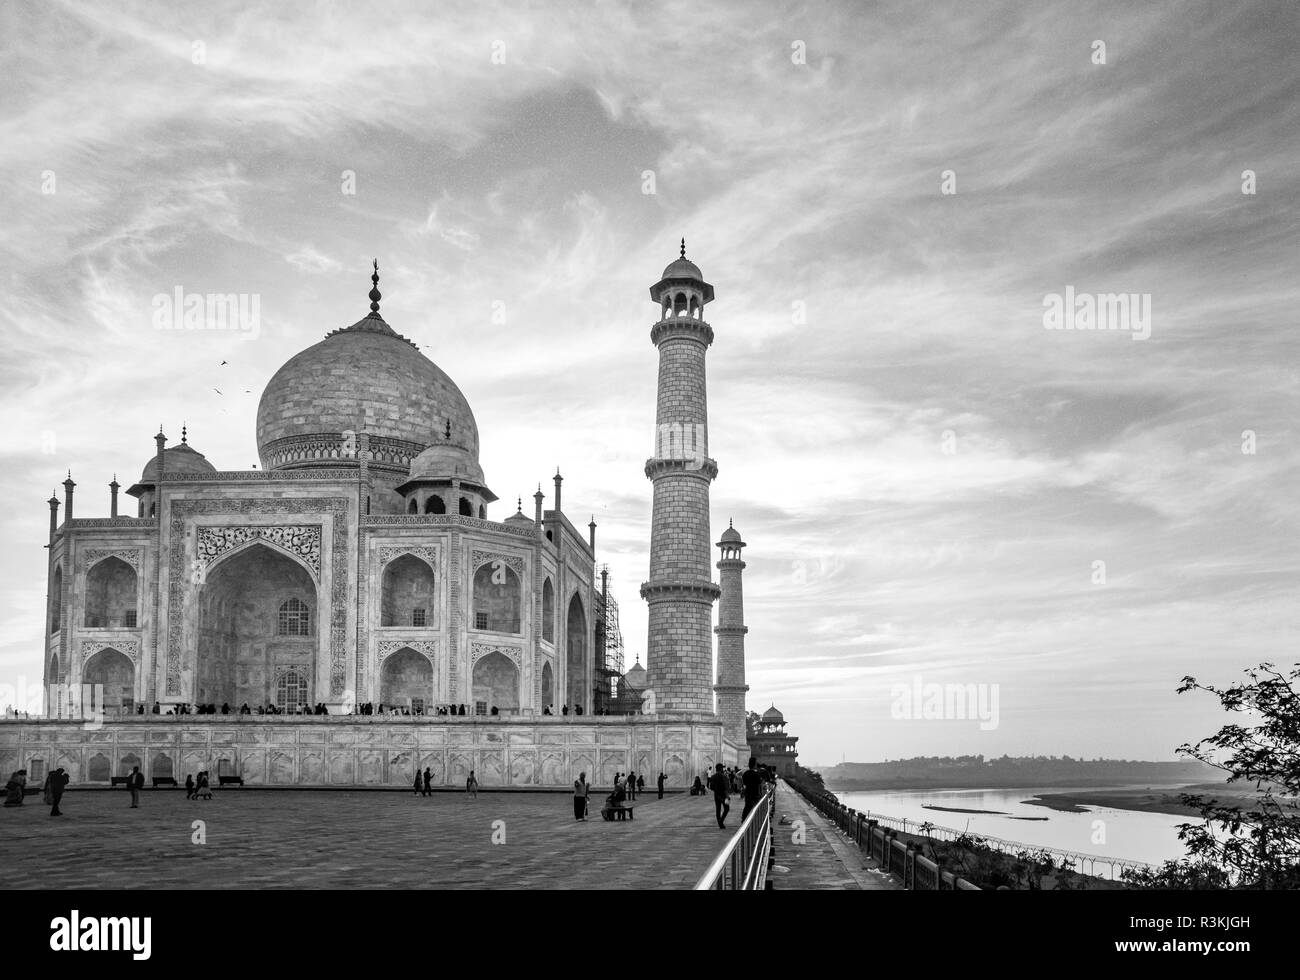 L'Inde, l'Uttar Pradesh. L'Agra. Pas d'eau pas de vie de l'expédition, Taj Mahal et minarets tombe sur la rivière Yamuna (affluent du Gange) au coucher du soleil Banque D'Images